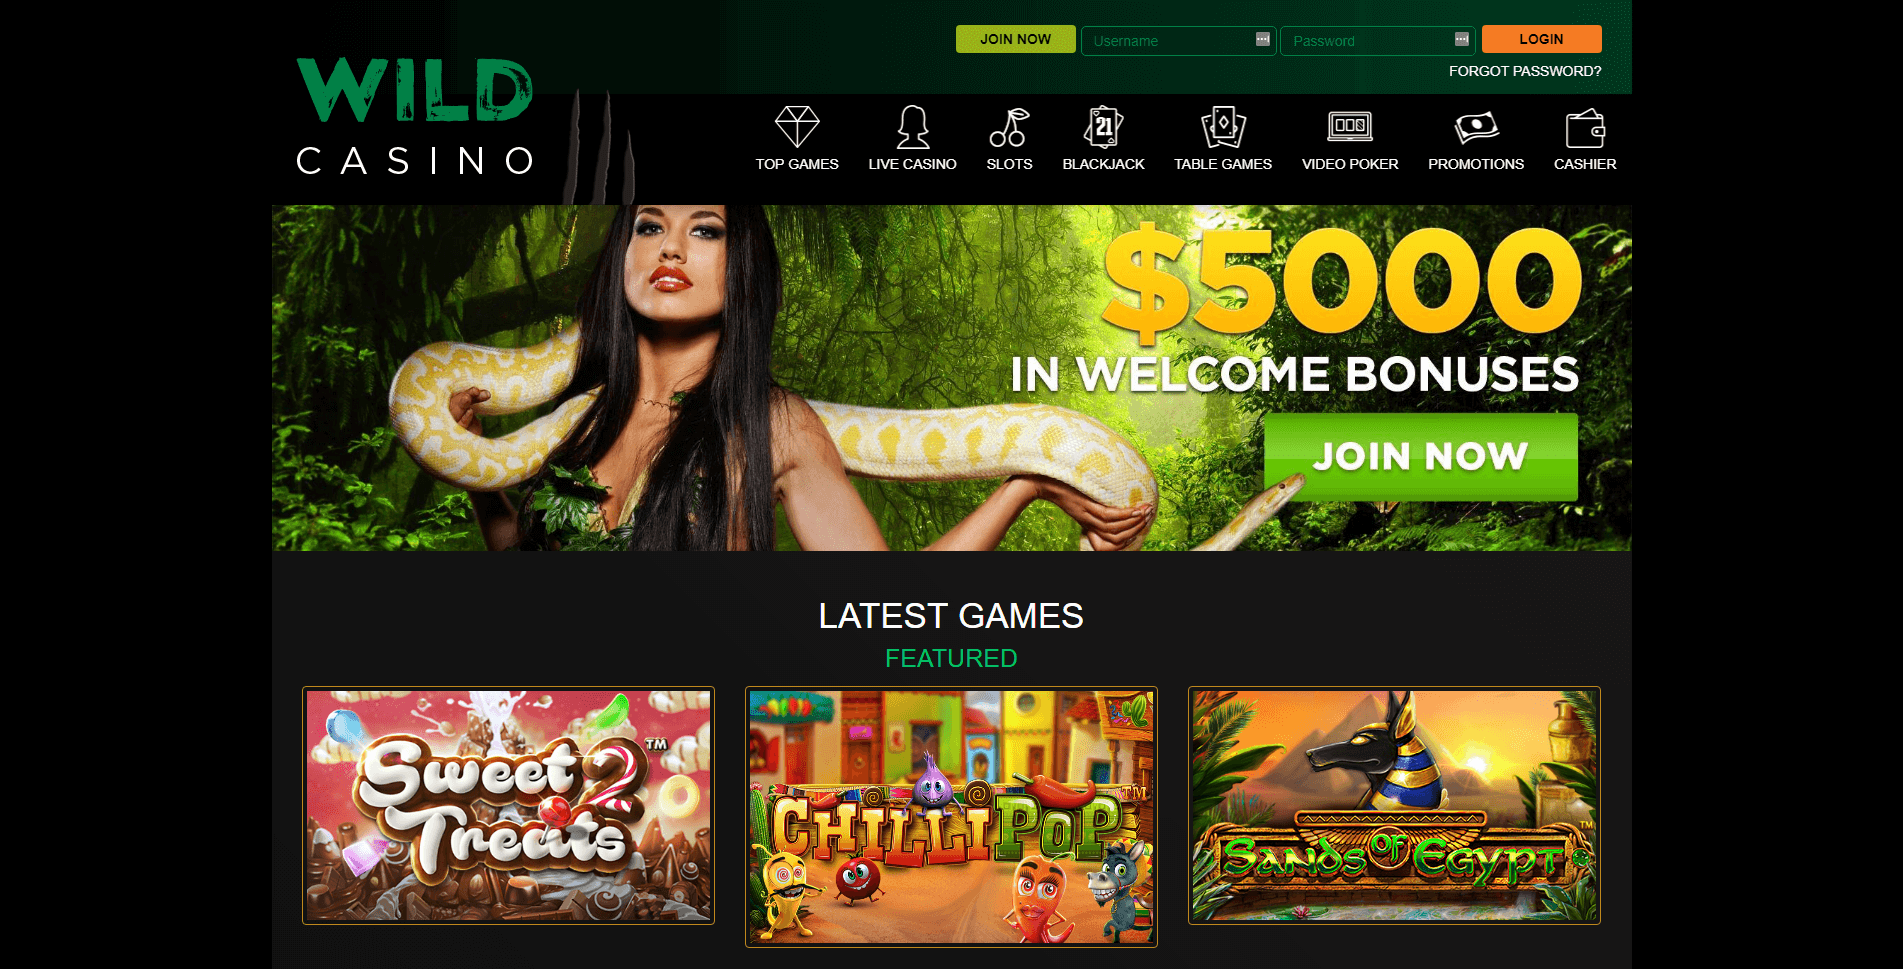 Wild Casino Online